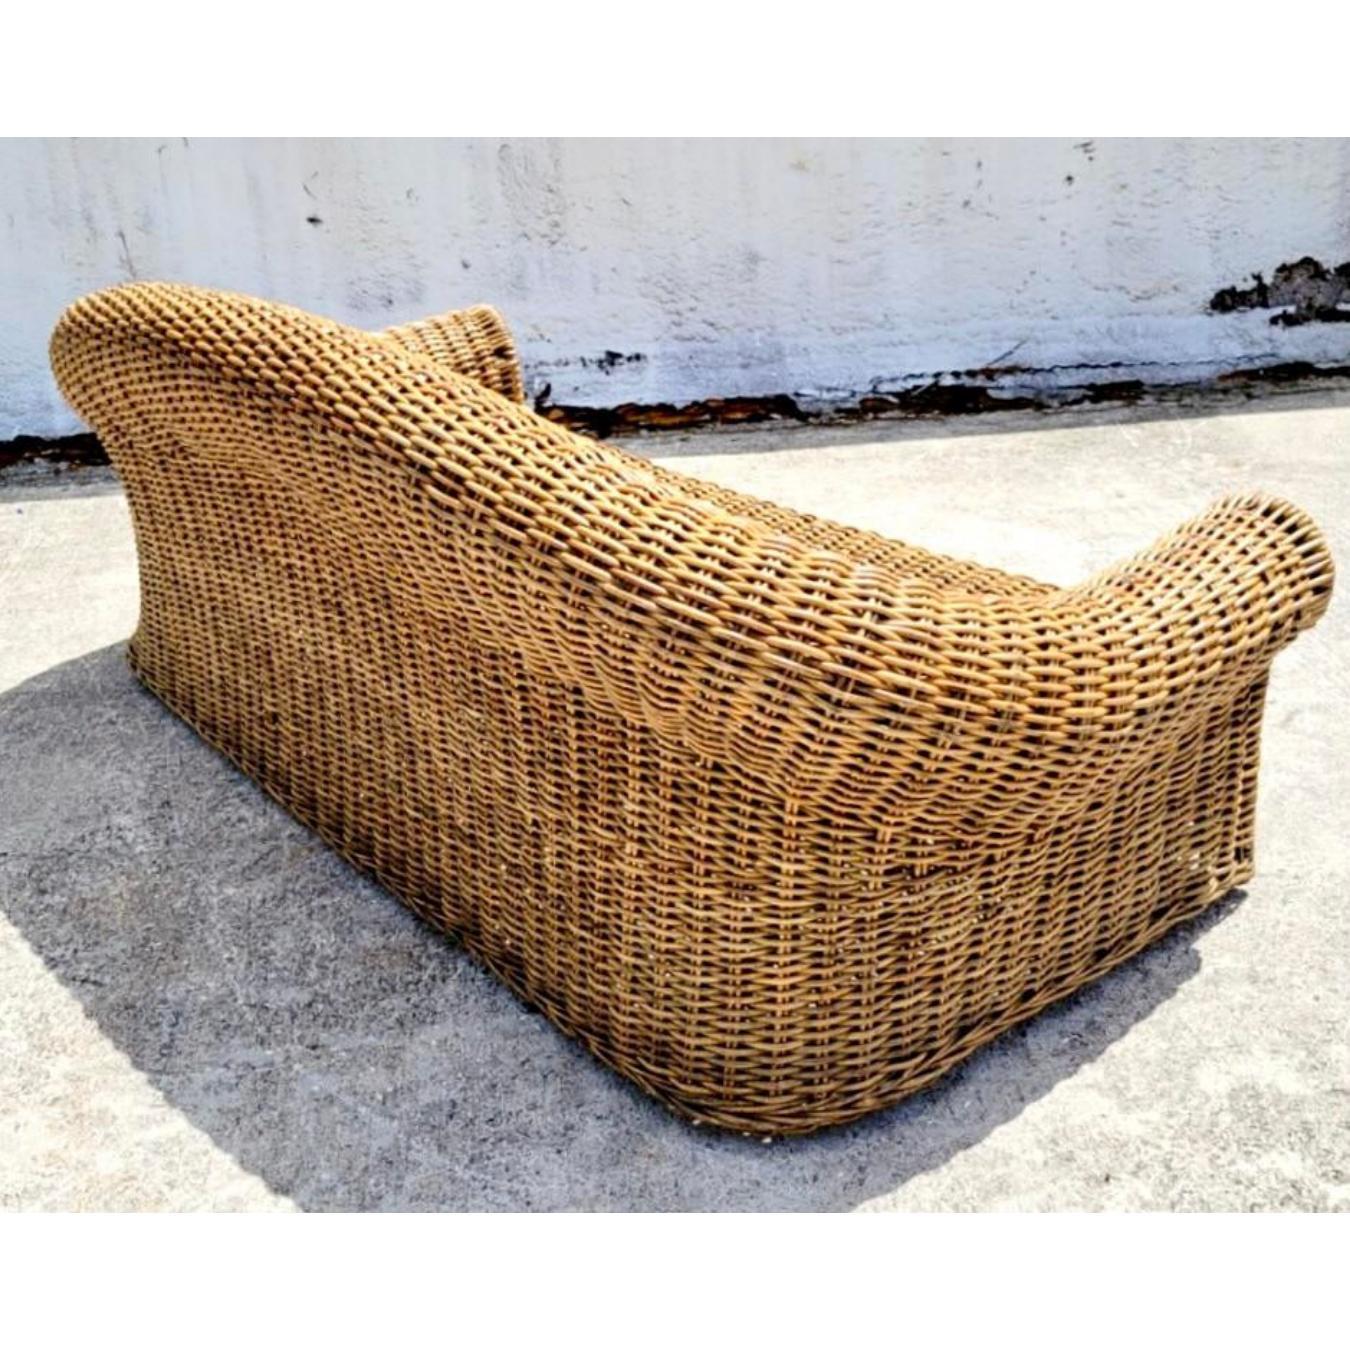 Fantastisches geflochtenes Vintage-Rattan-Sofa. Ein extragroßer Rahmen mit tiefen Sitzen und einem übertriebenen Rollback. Inklusive Kissen. Wurde aus einem Nachlass in Miami erworben.